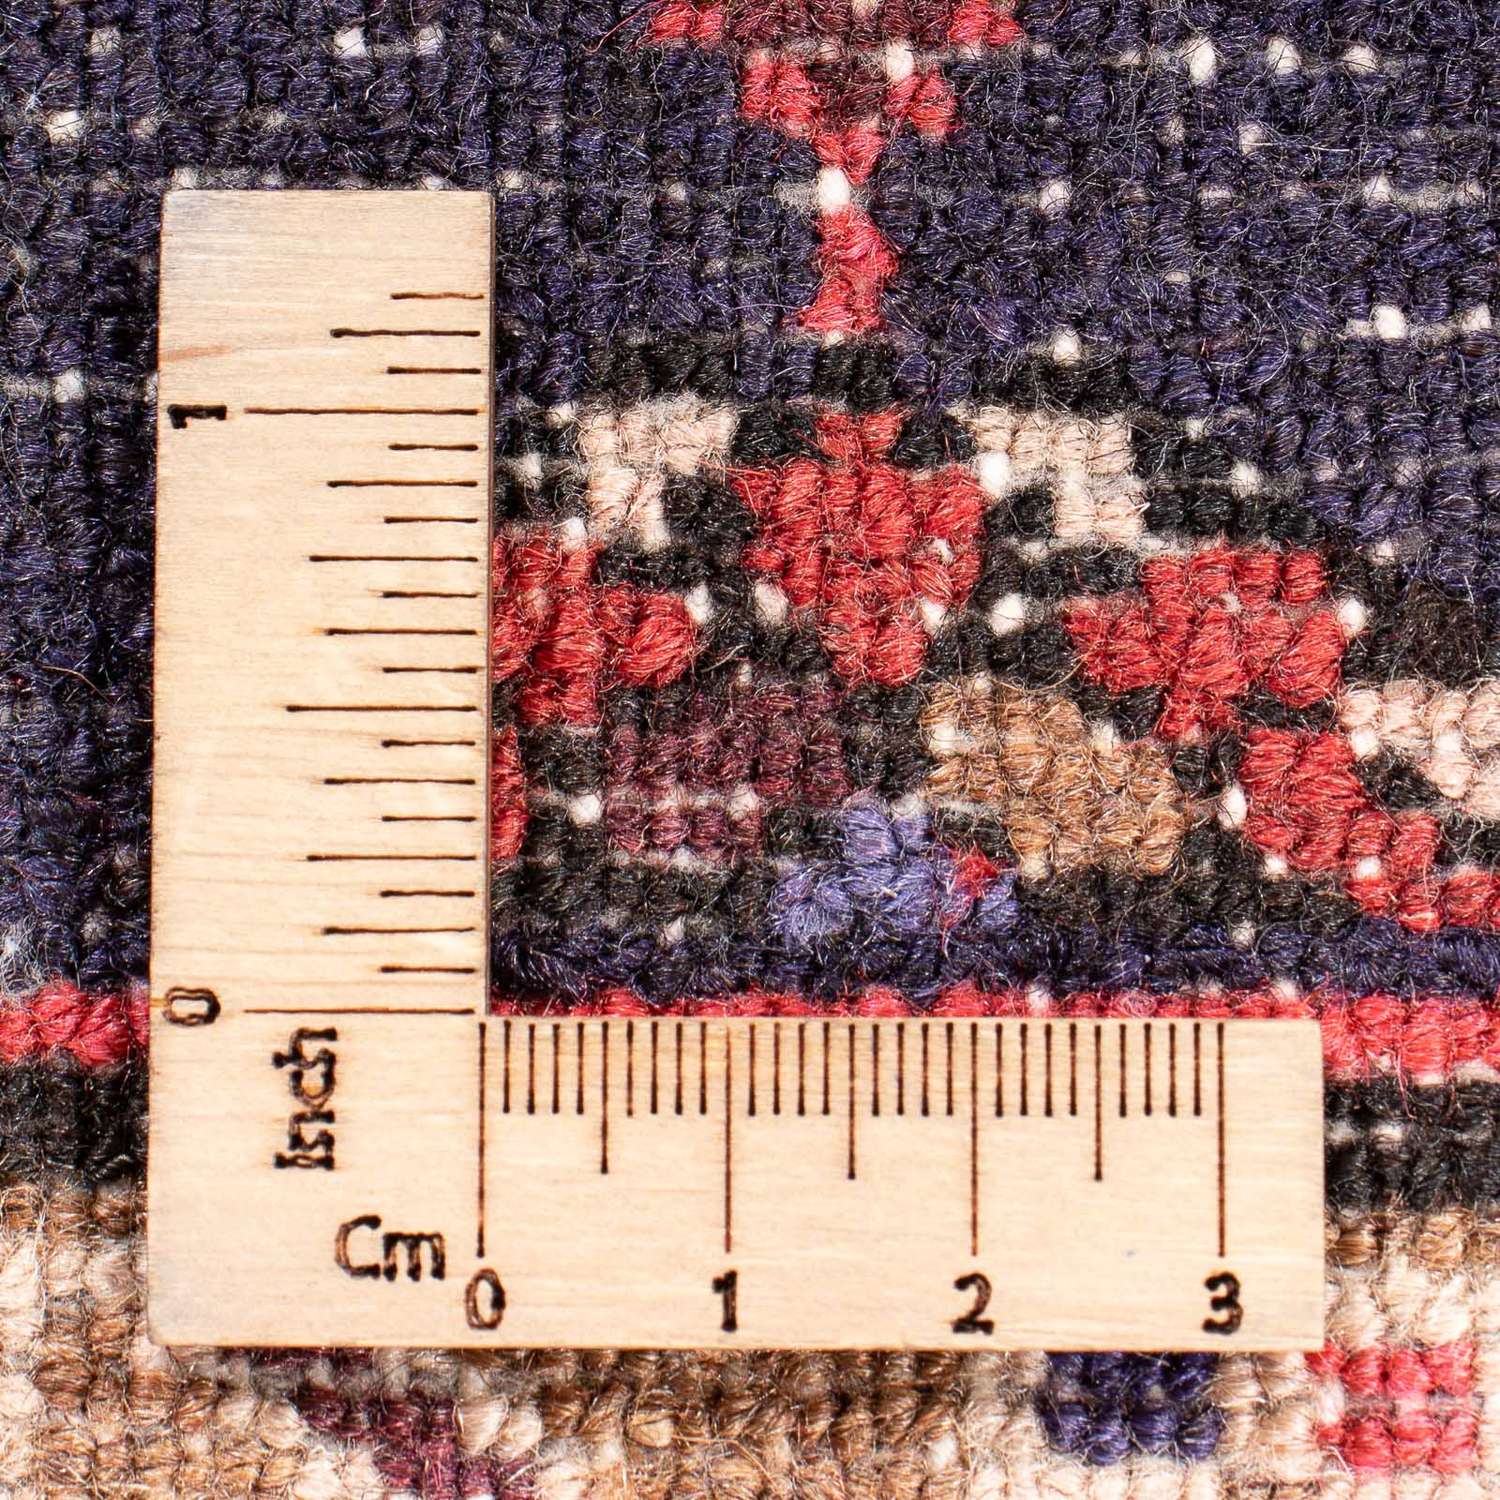 Perský koberec - Nomádský - 194 x 131 cm - červená